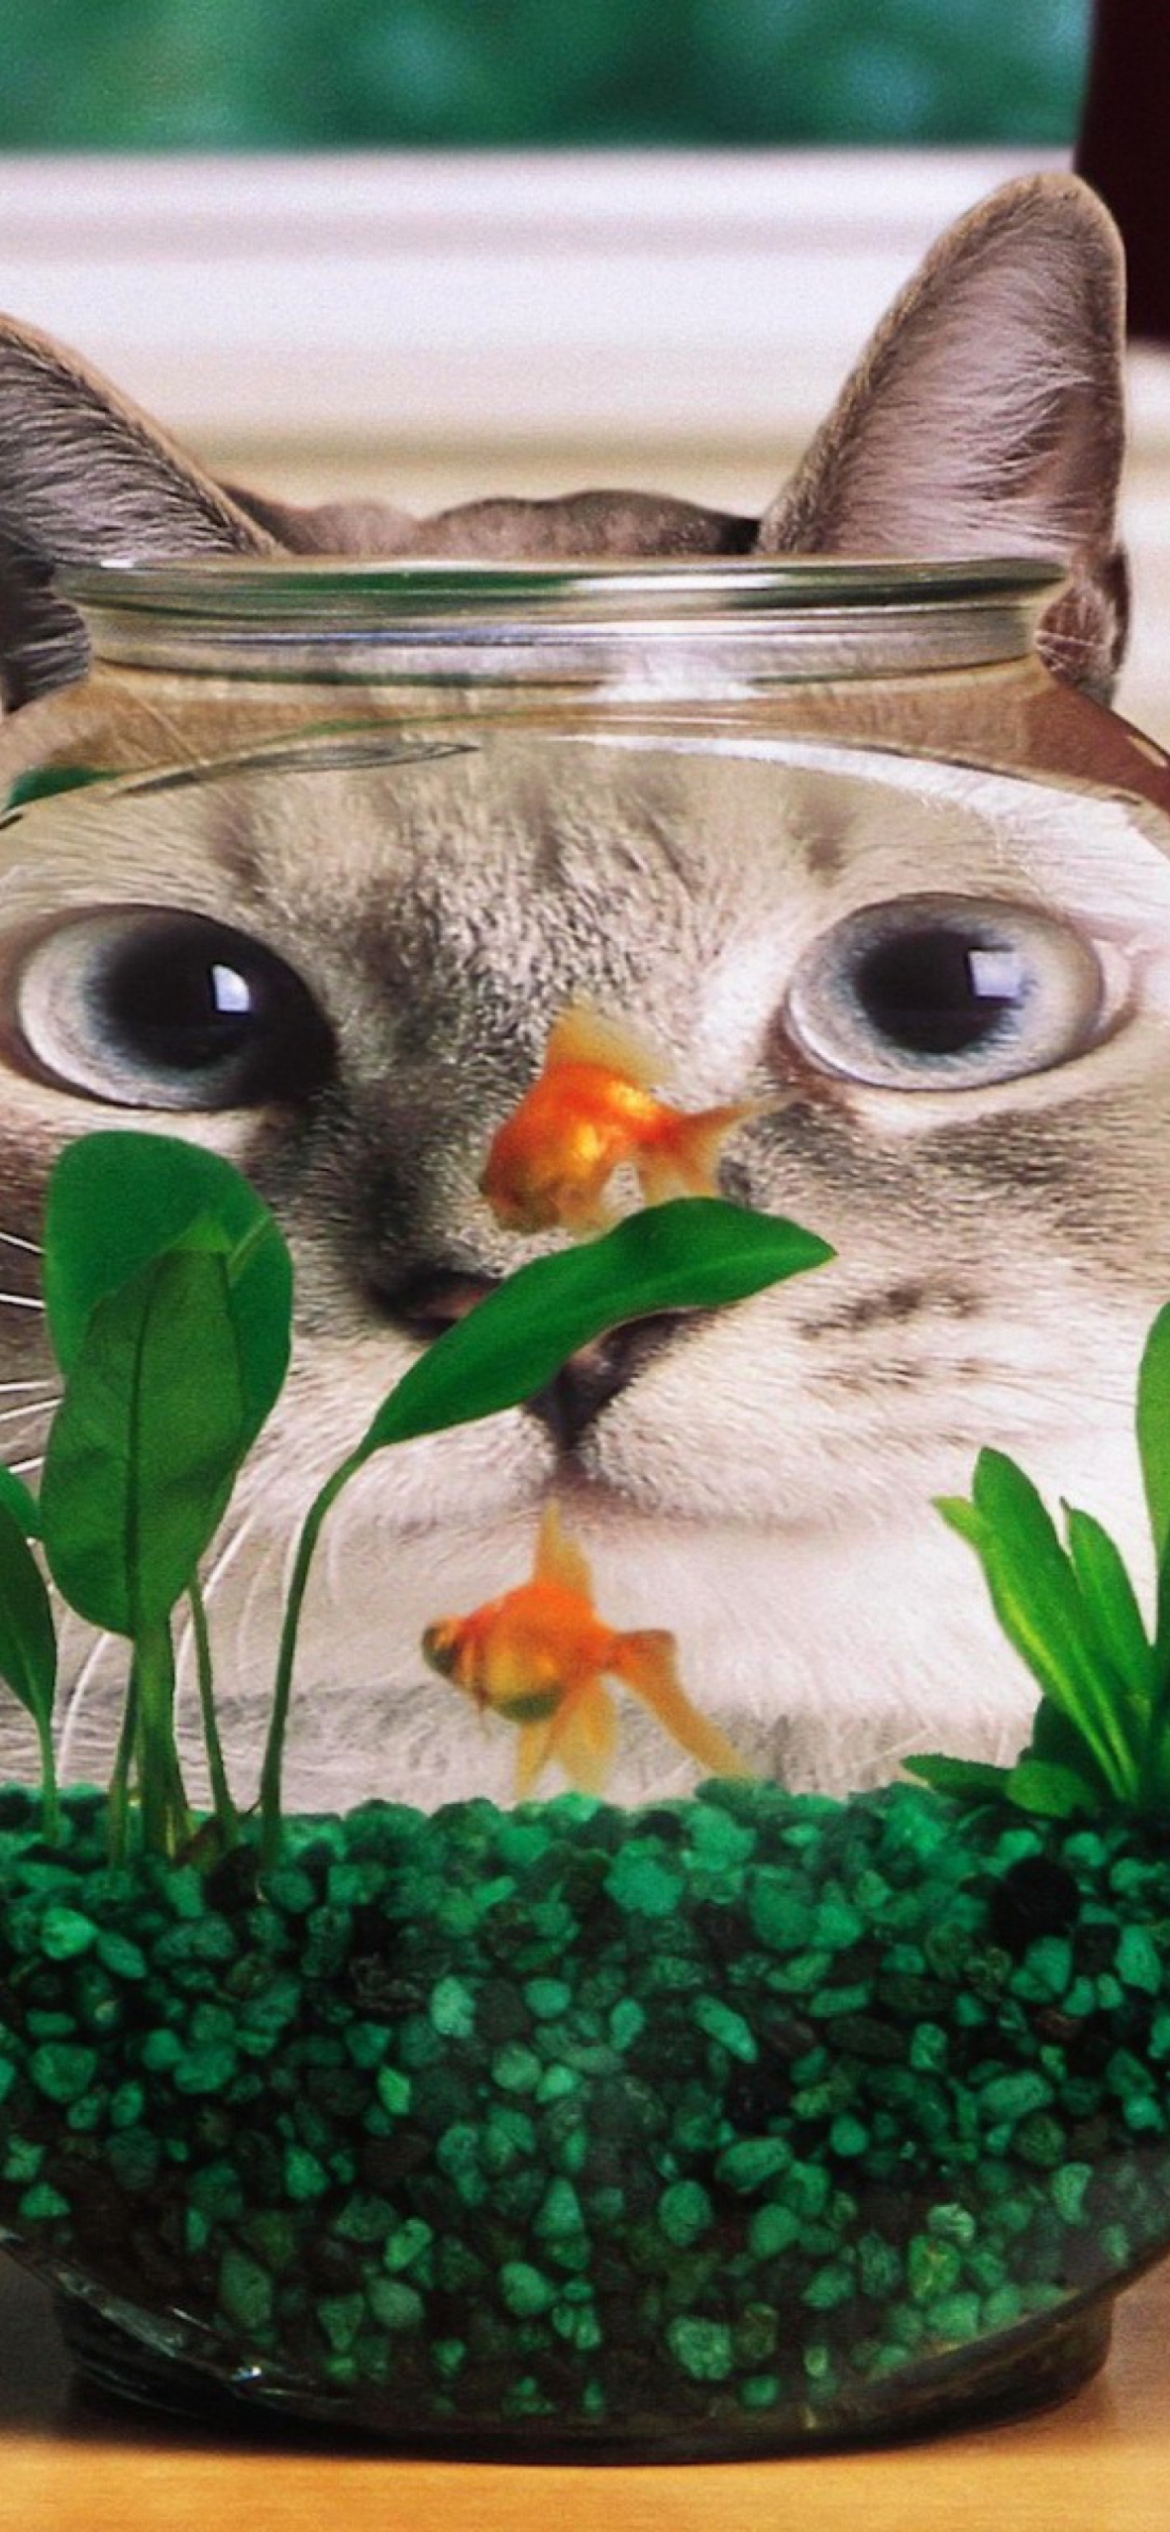 Aquarium Cat Funny Face Distortion screenshot #1 1170x2532